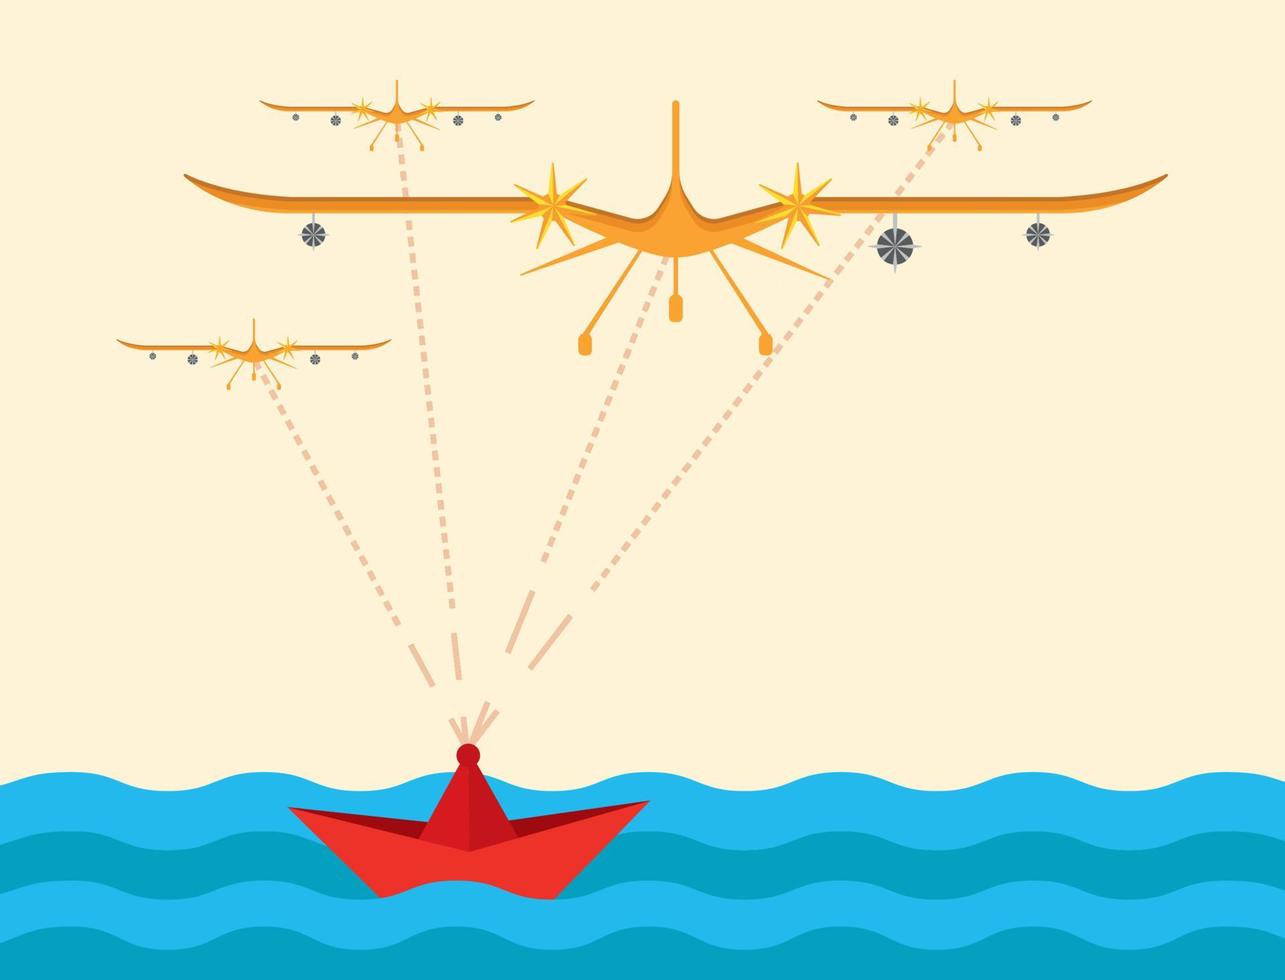 besturen vanaf een schip op zee met radar en stuursensoren. kleurrijk UAV-pictogram. luchtvaart technologie militaire drone moderne oorlogsvoering. het wordt op een moderne manier getoond als een onbemand luchtvoertuig. vector